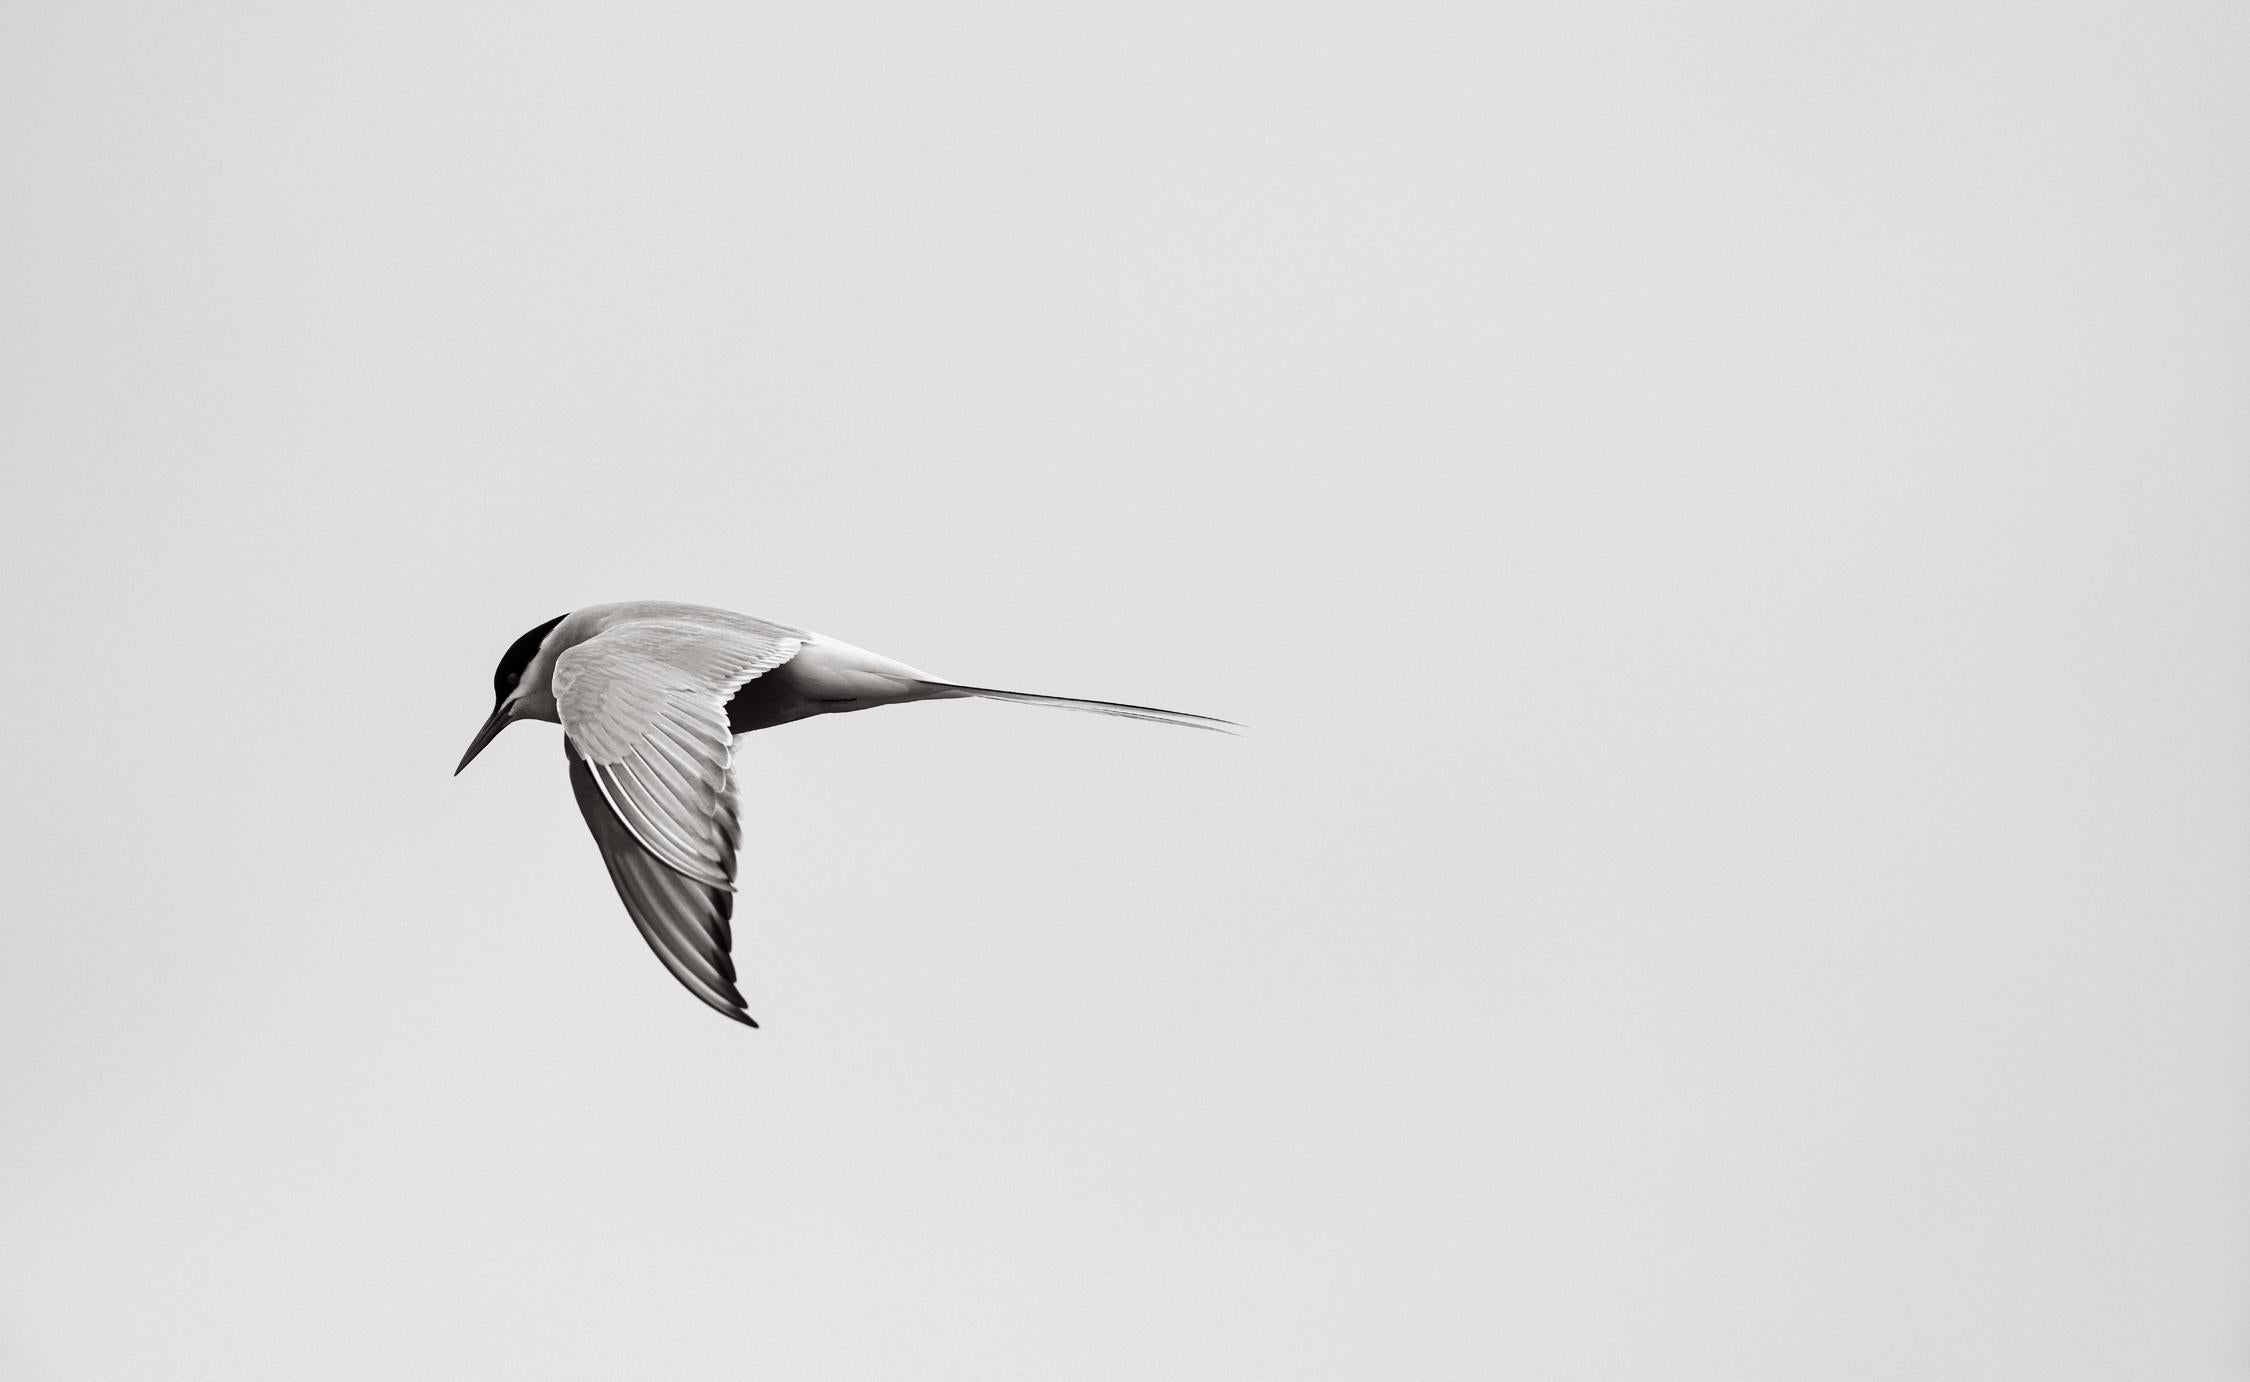 Drew Doggett Black and White Photograph – Minimale Schwarz-Weiß-Fotografie eines Vogels in Mid-Flight